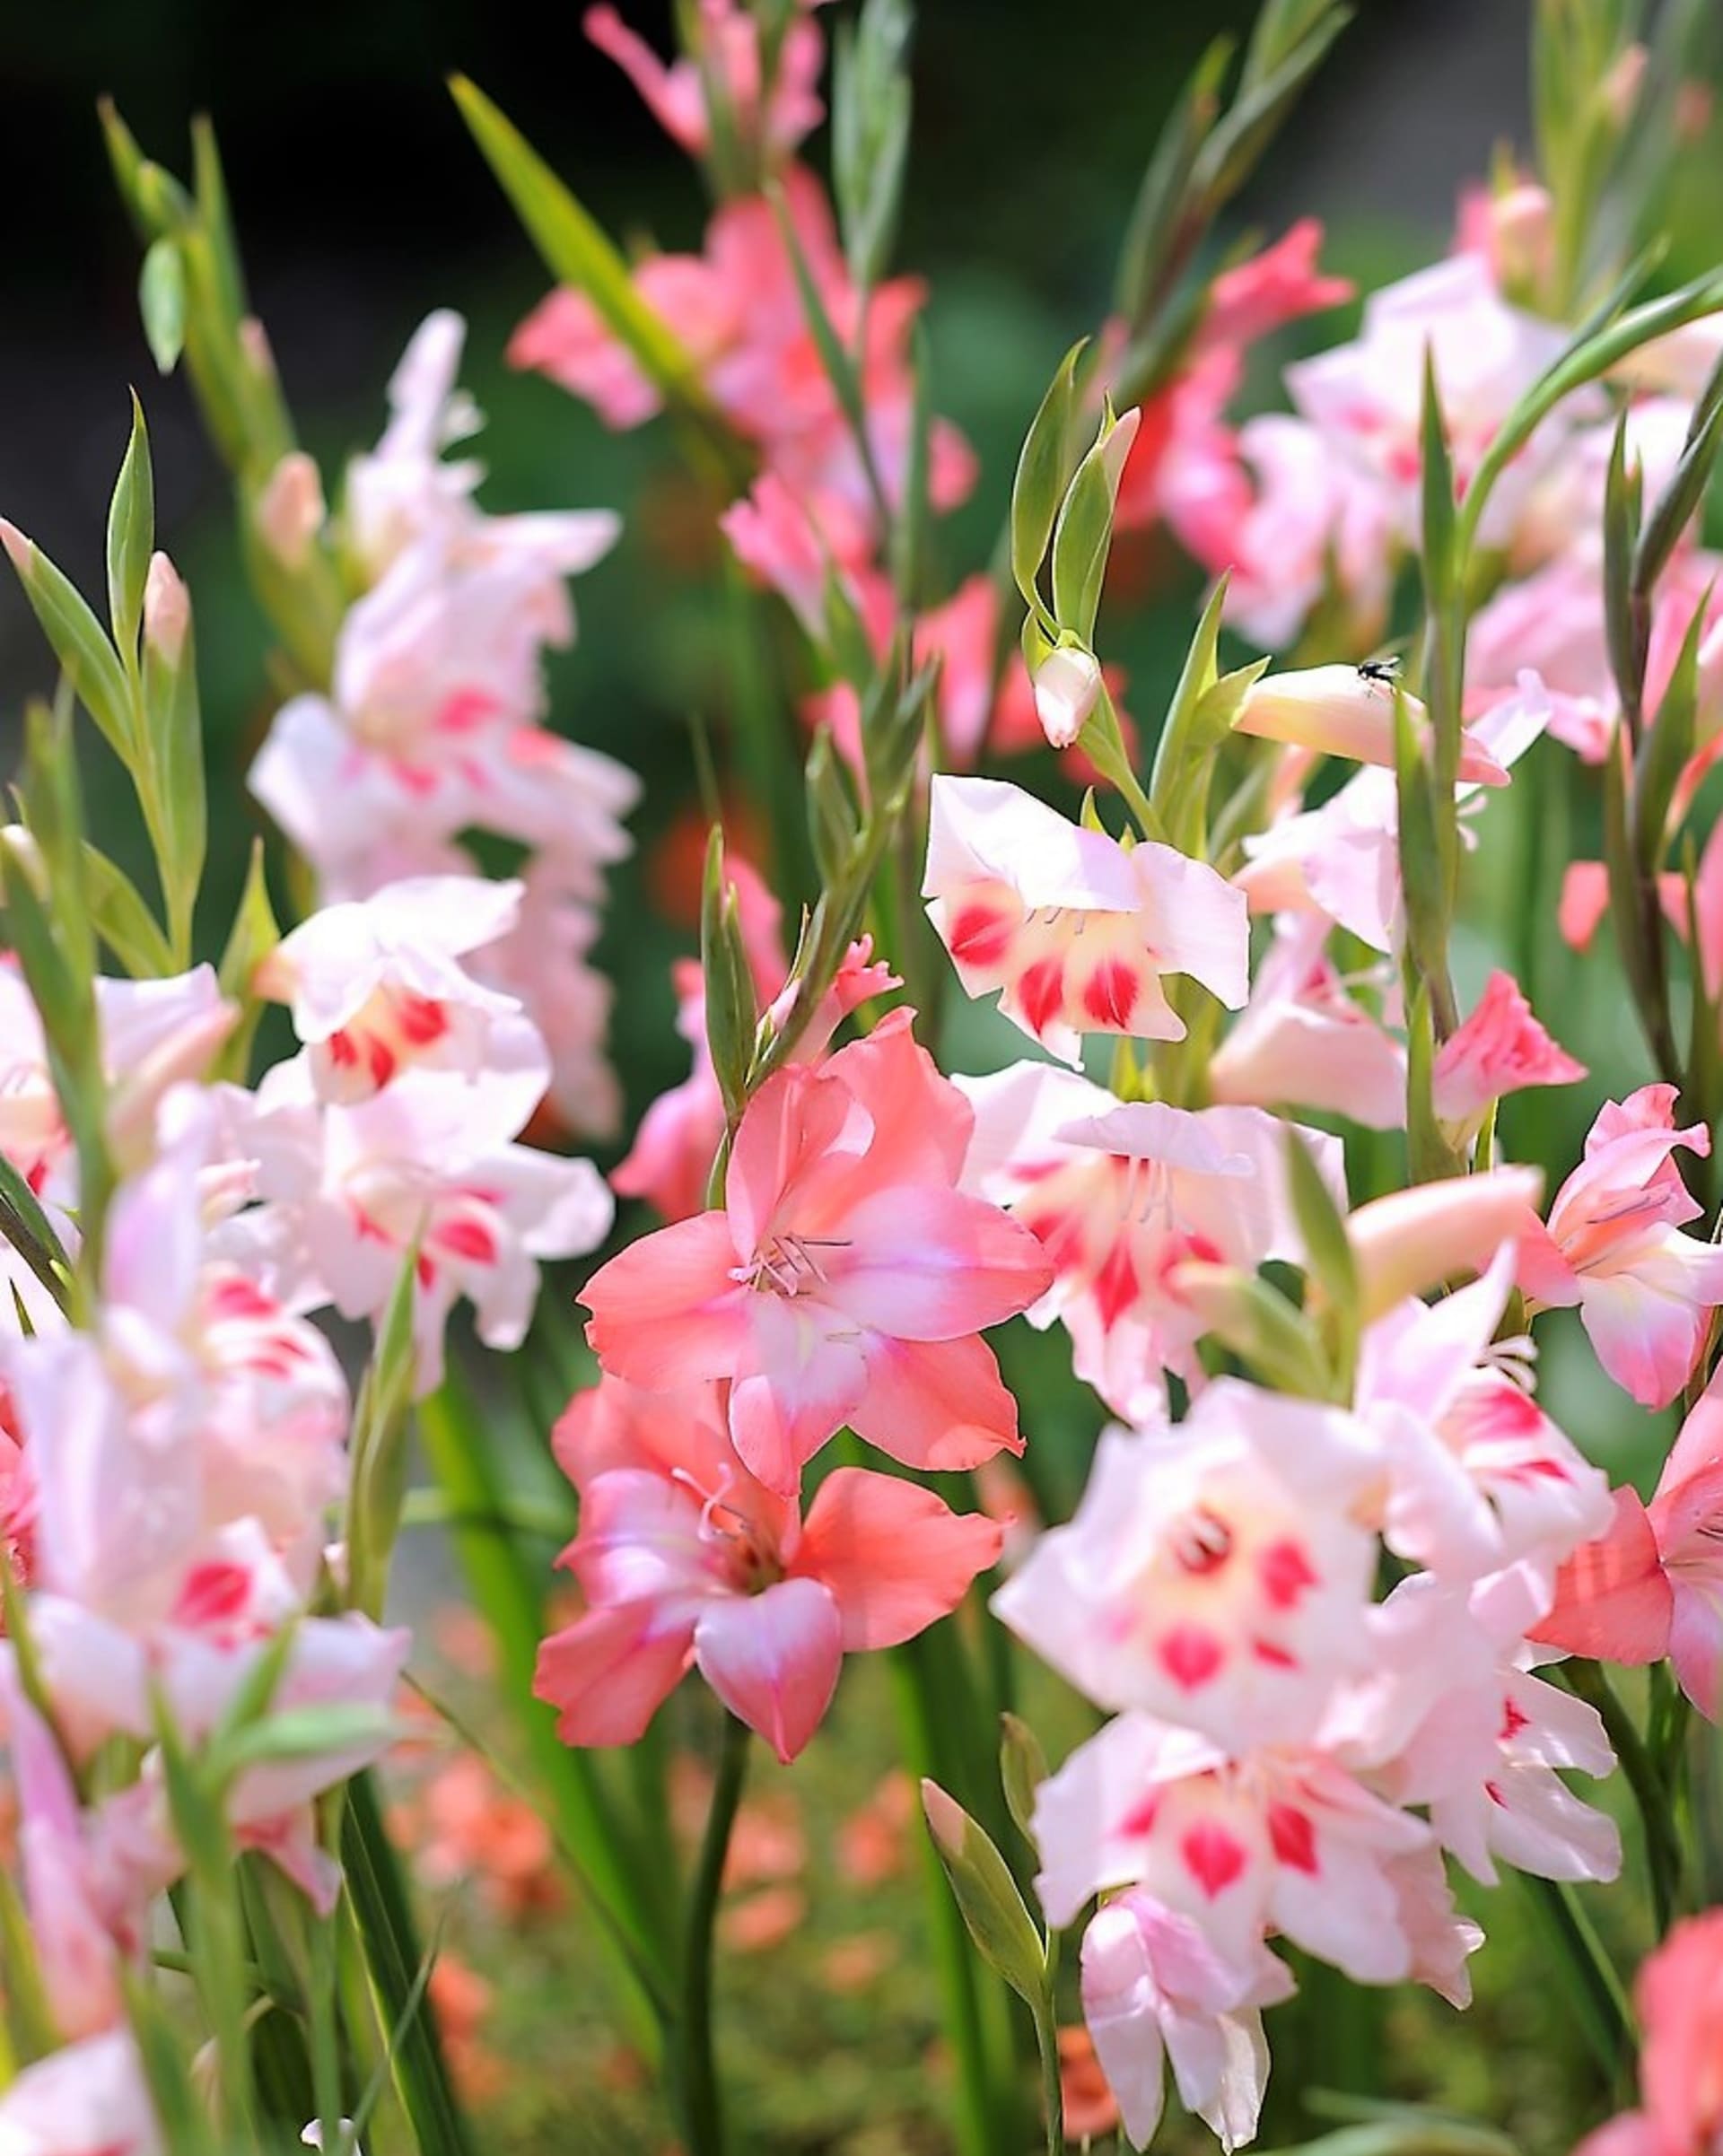 Hybrid Gladiolus tubergenii, pojmenovaný po svém šlechtiteli Van Tubergenovi, patří mezi nejdříve kvetoucí mečíky, kvete v květnu a červnu.